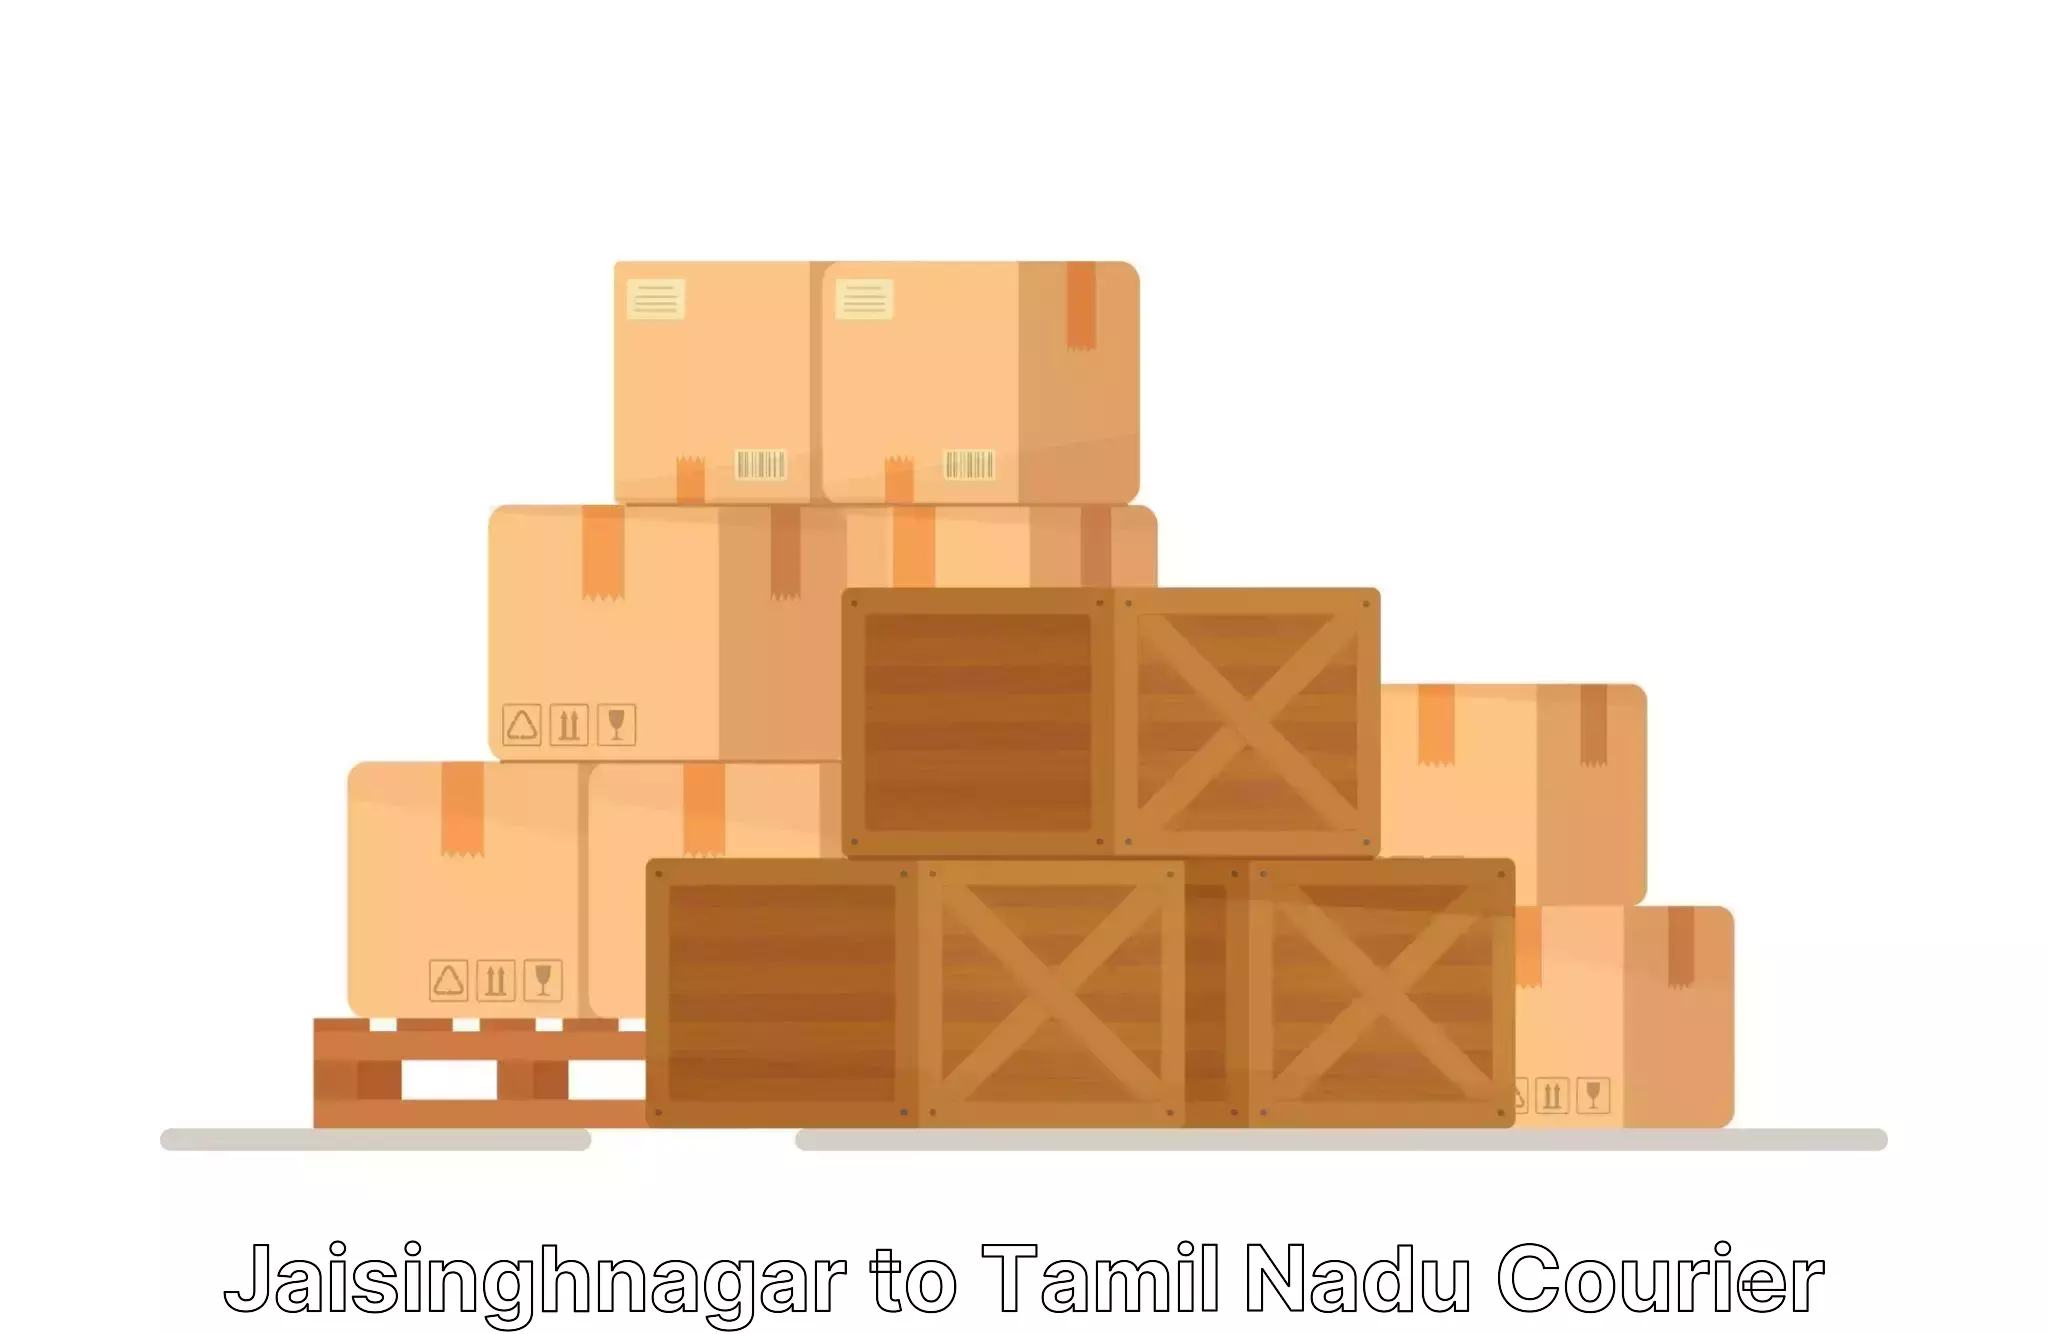 Professional packing services Jaisinghnagar to Tiruturaipundi